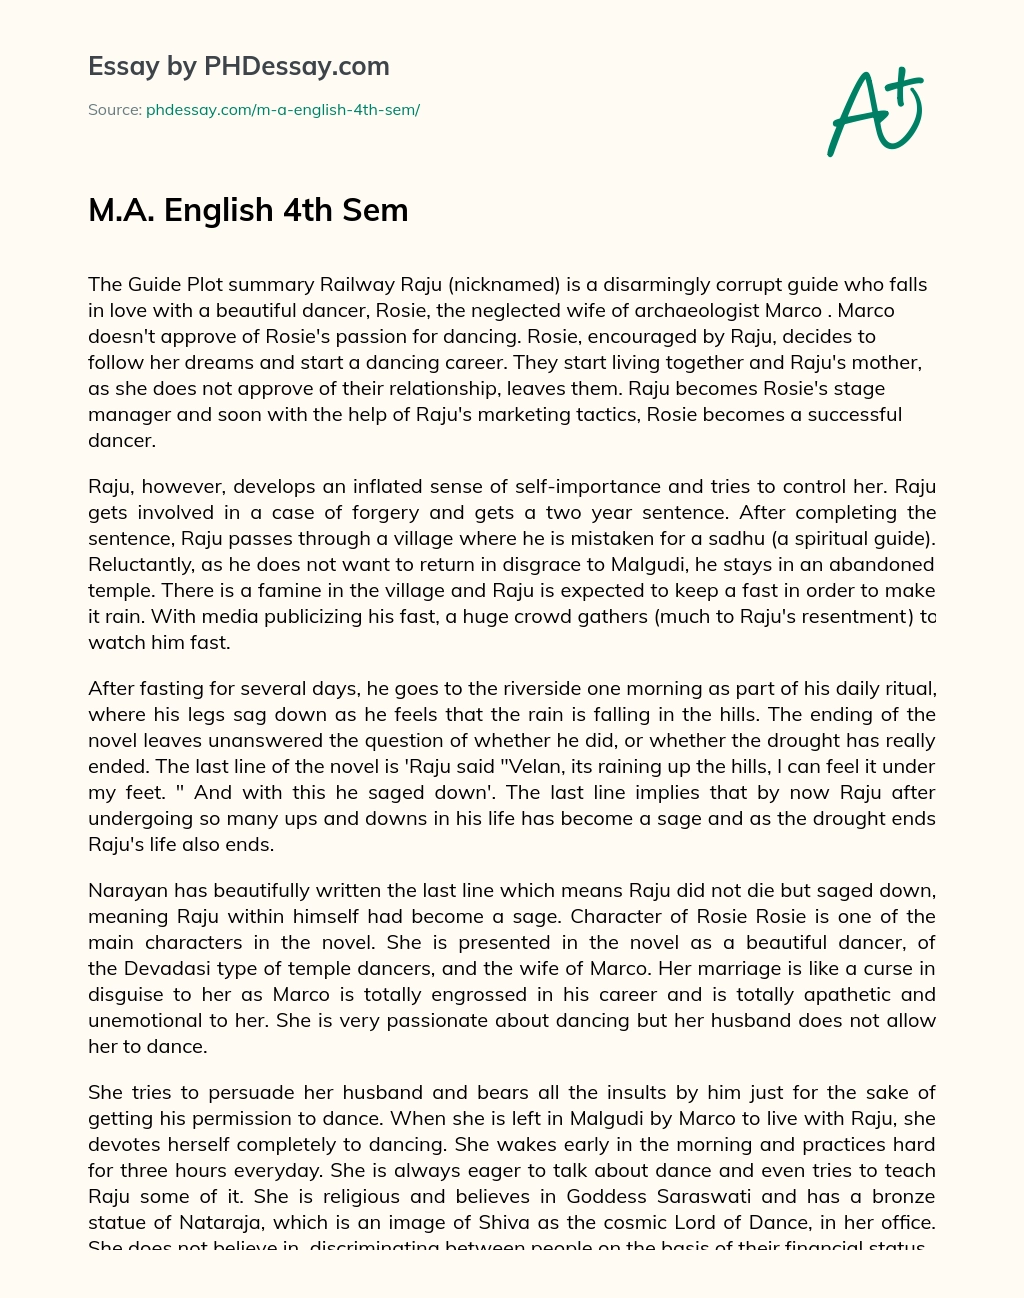 M.A. English 4th Sem essay